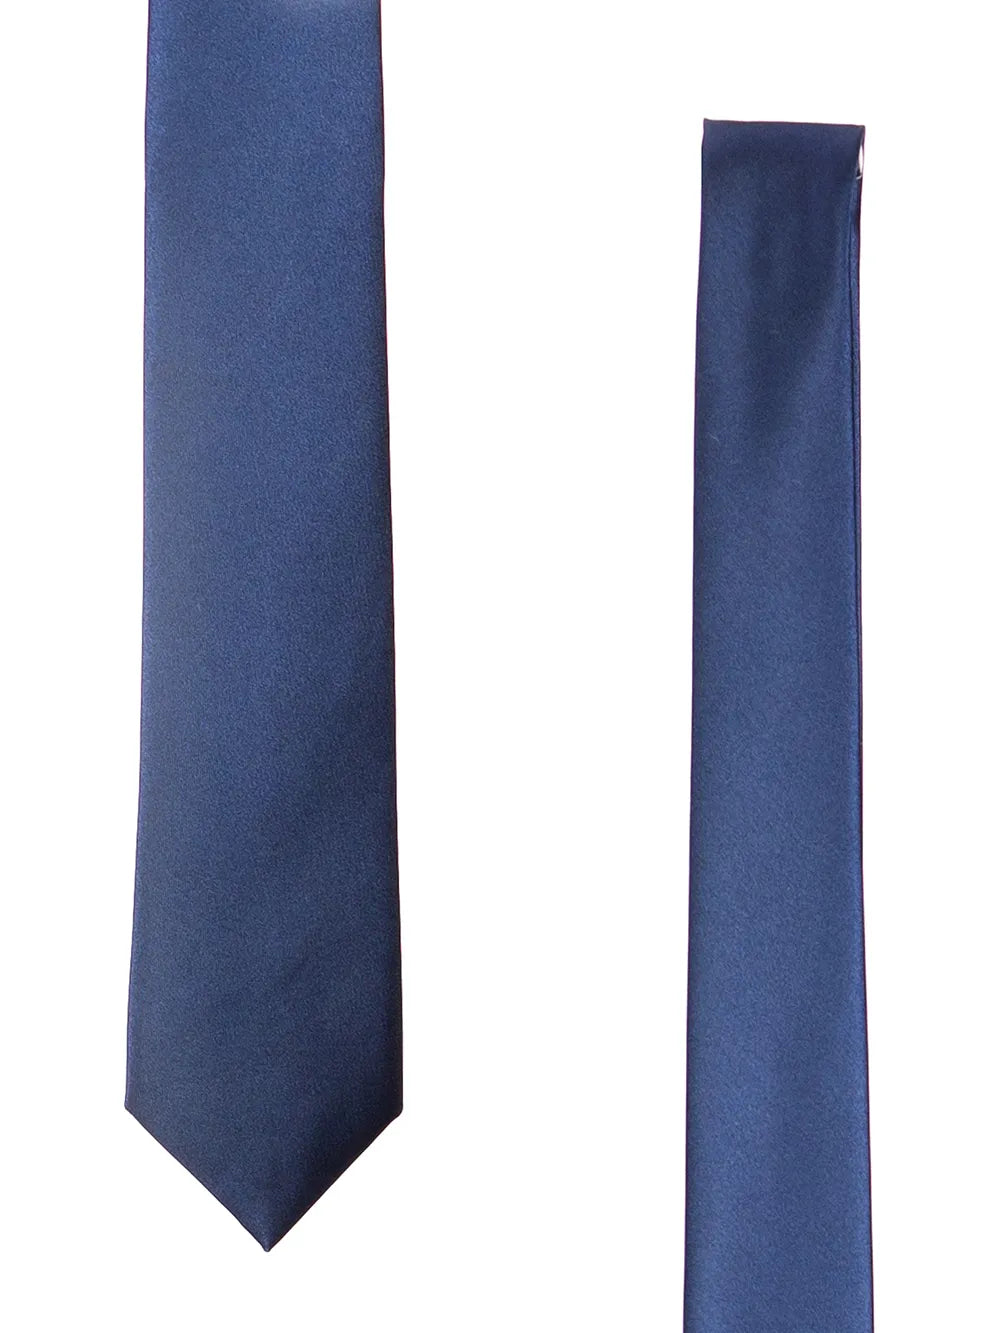 Cravatta Blu Lucida